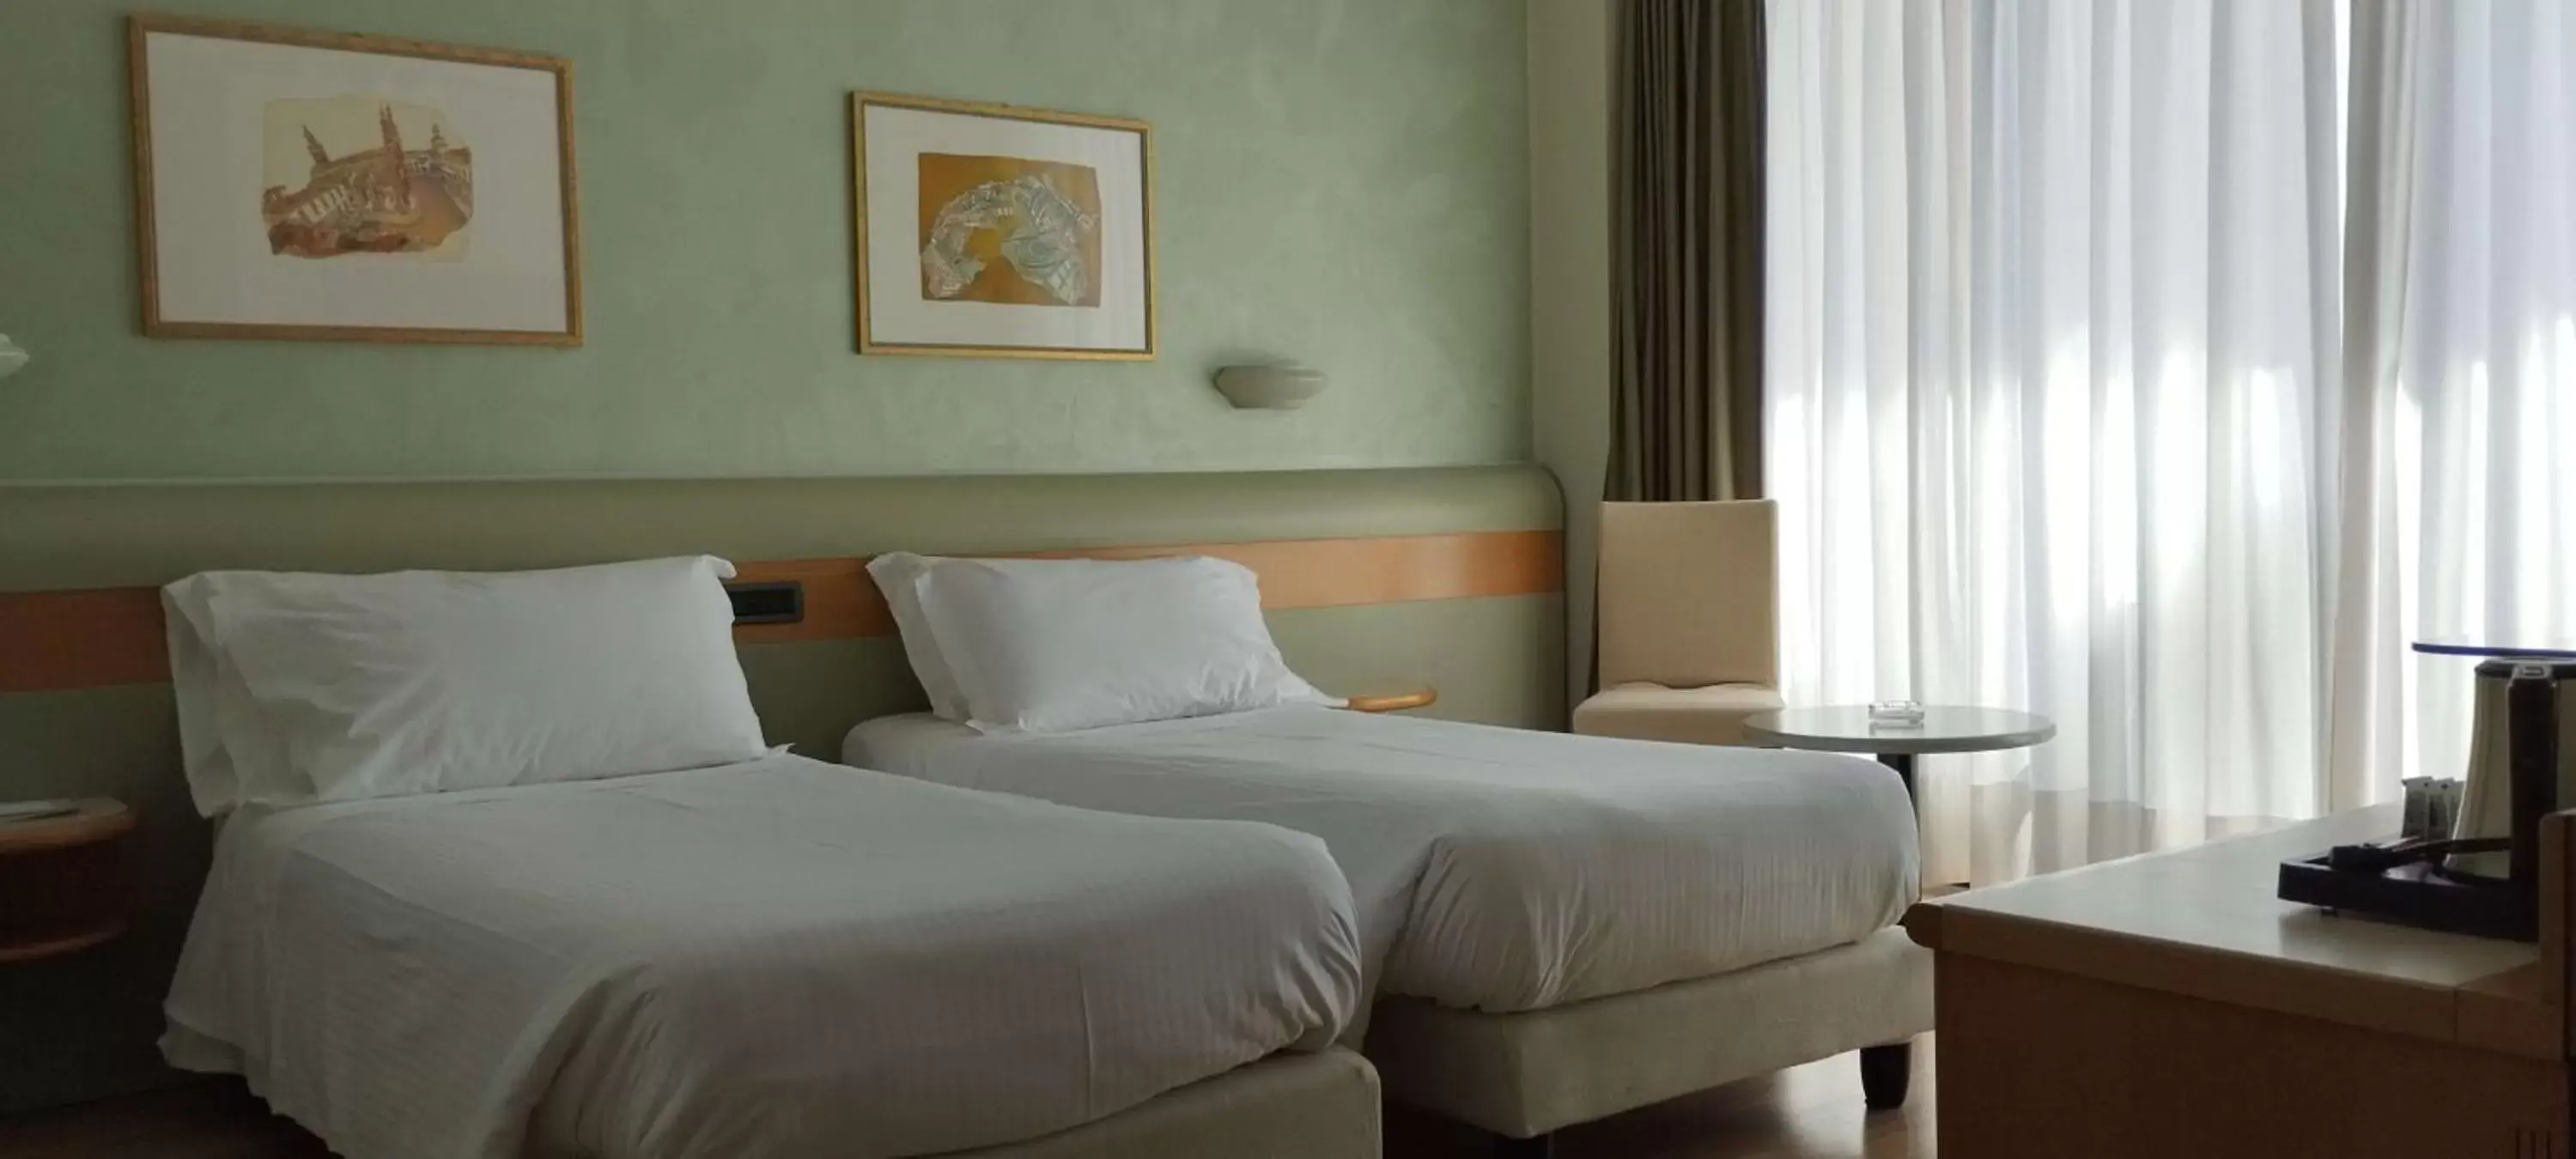 Bedroom, Bed in Best Western Hotel Leonardo da Vinci